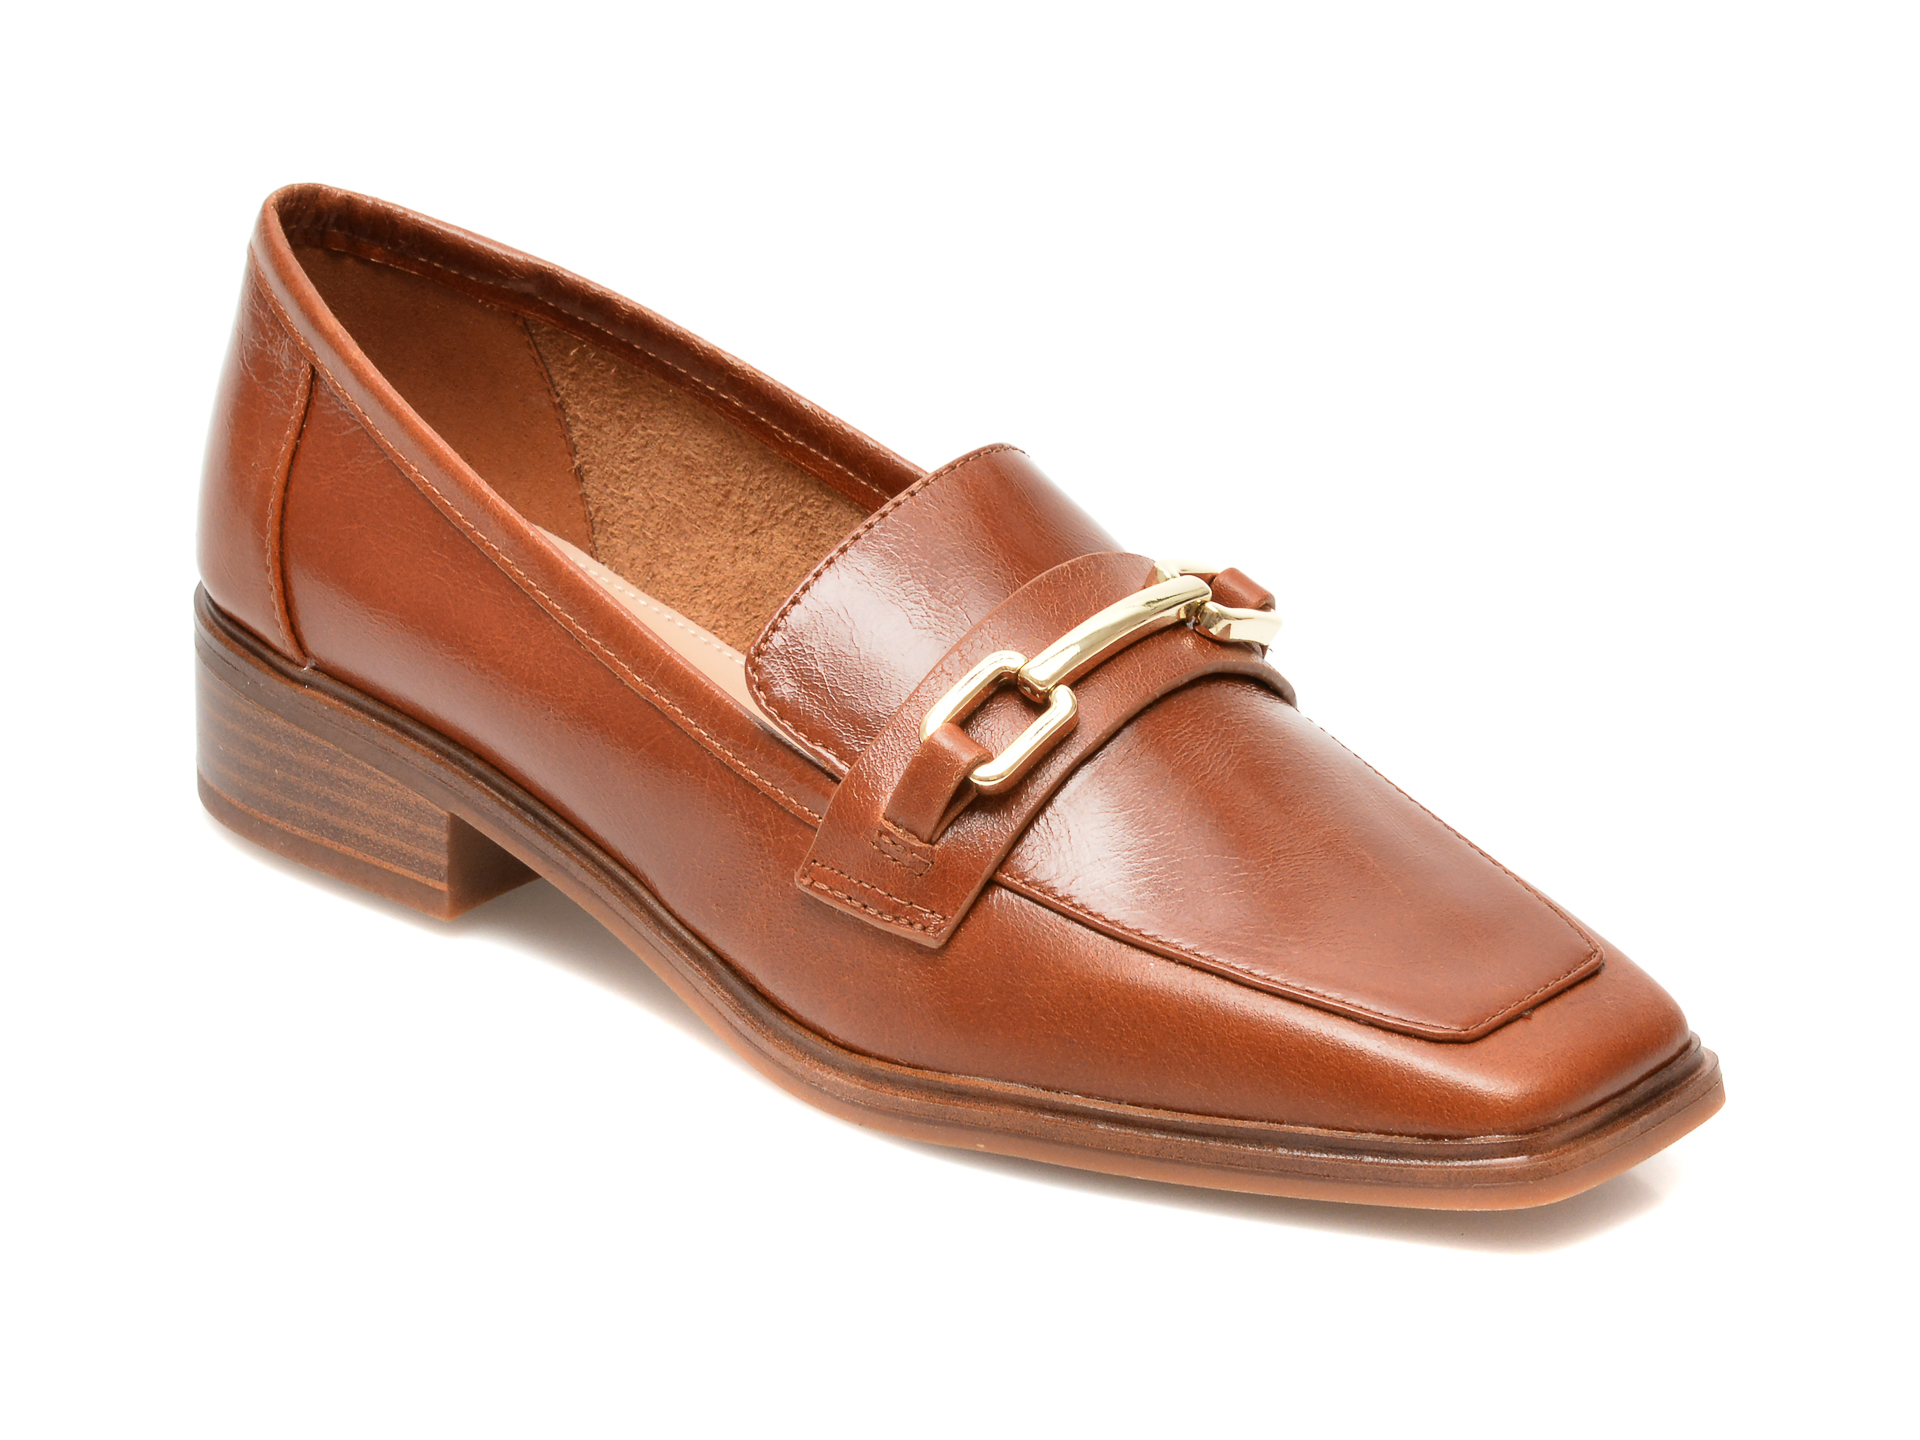 Pantofi ALDO maro, WICICLYAFLEX220, din piele naturala Aldo imagine reduceri